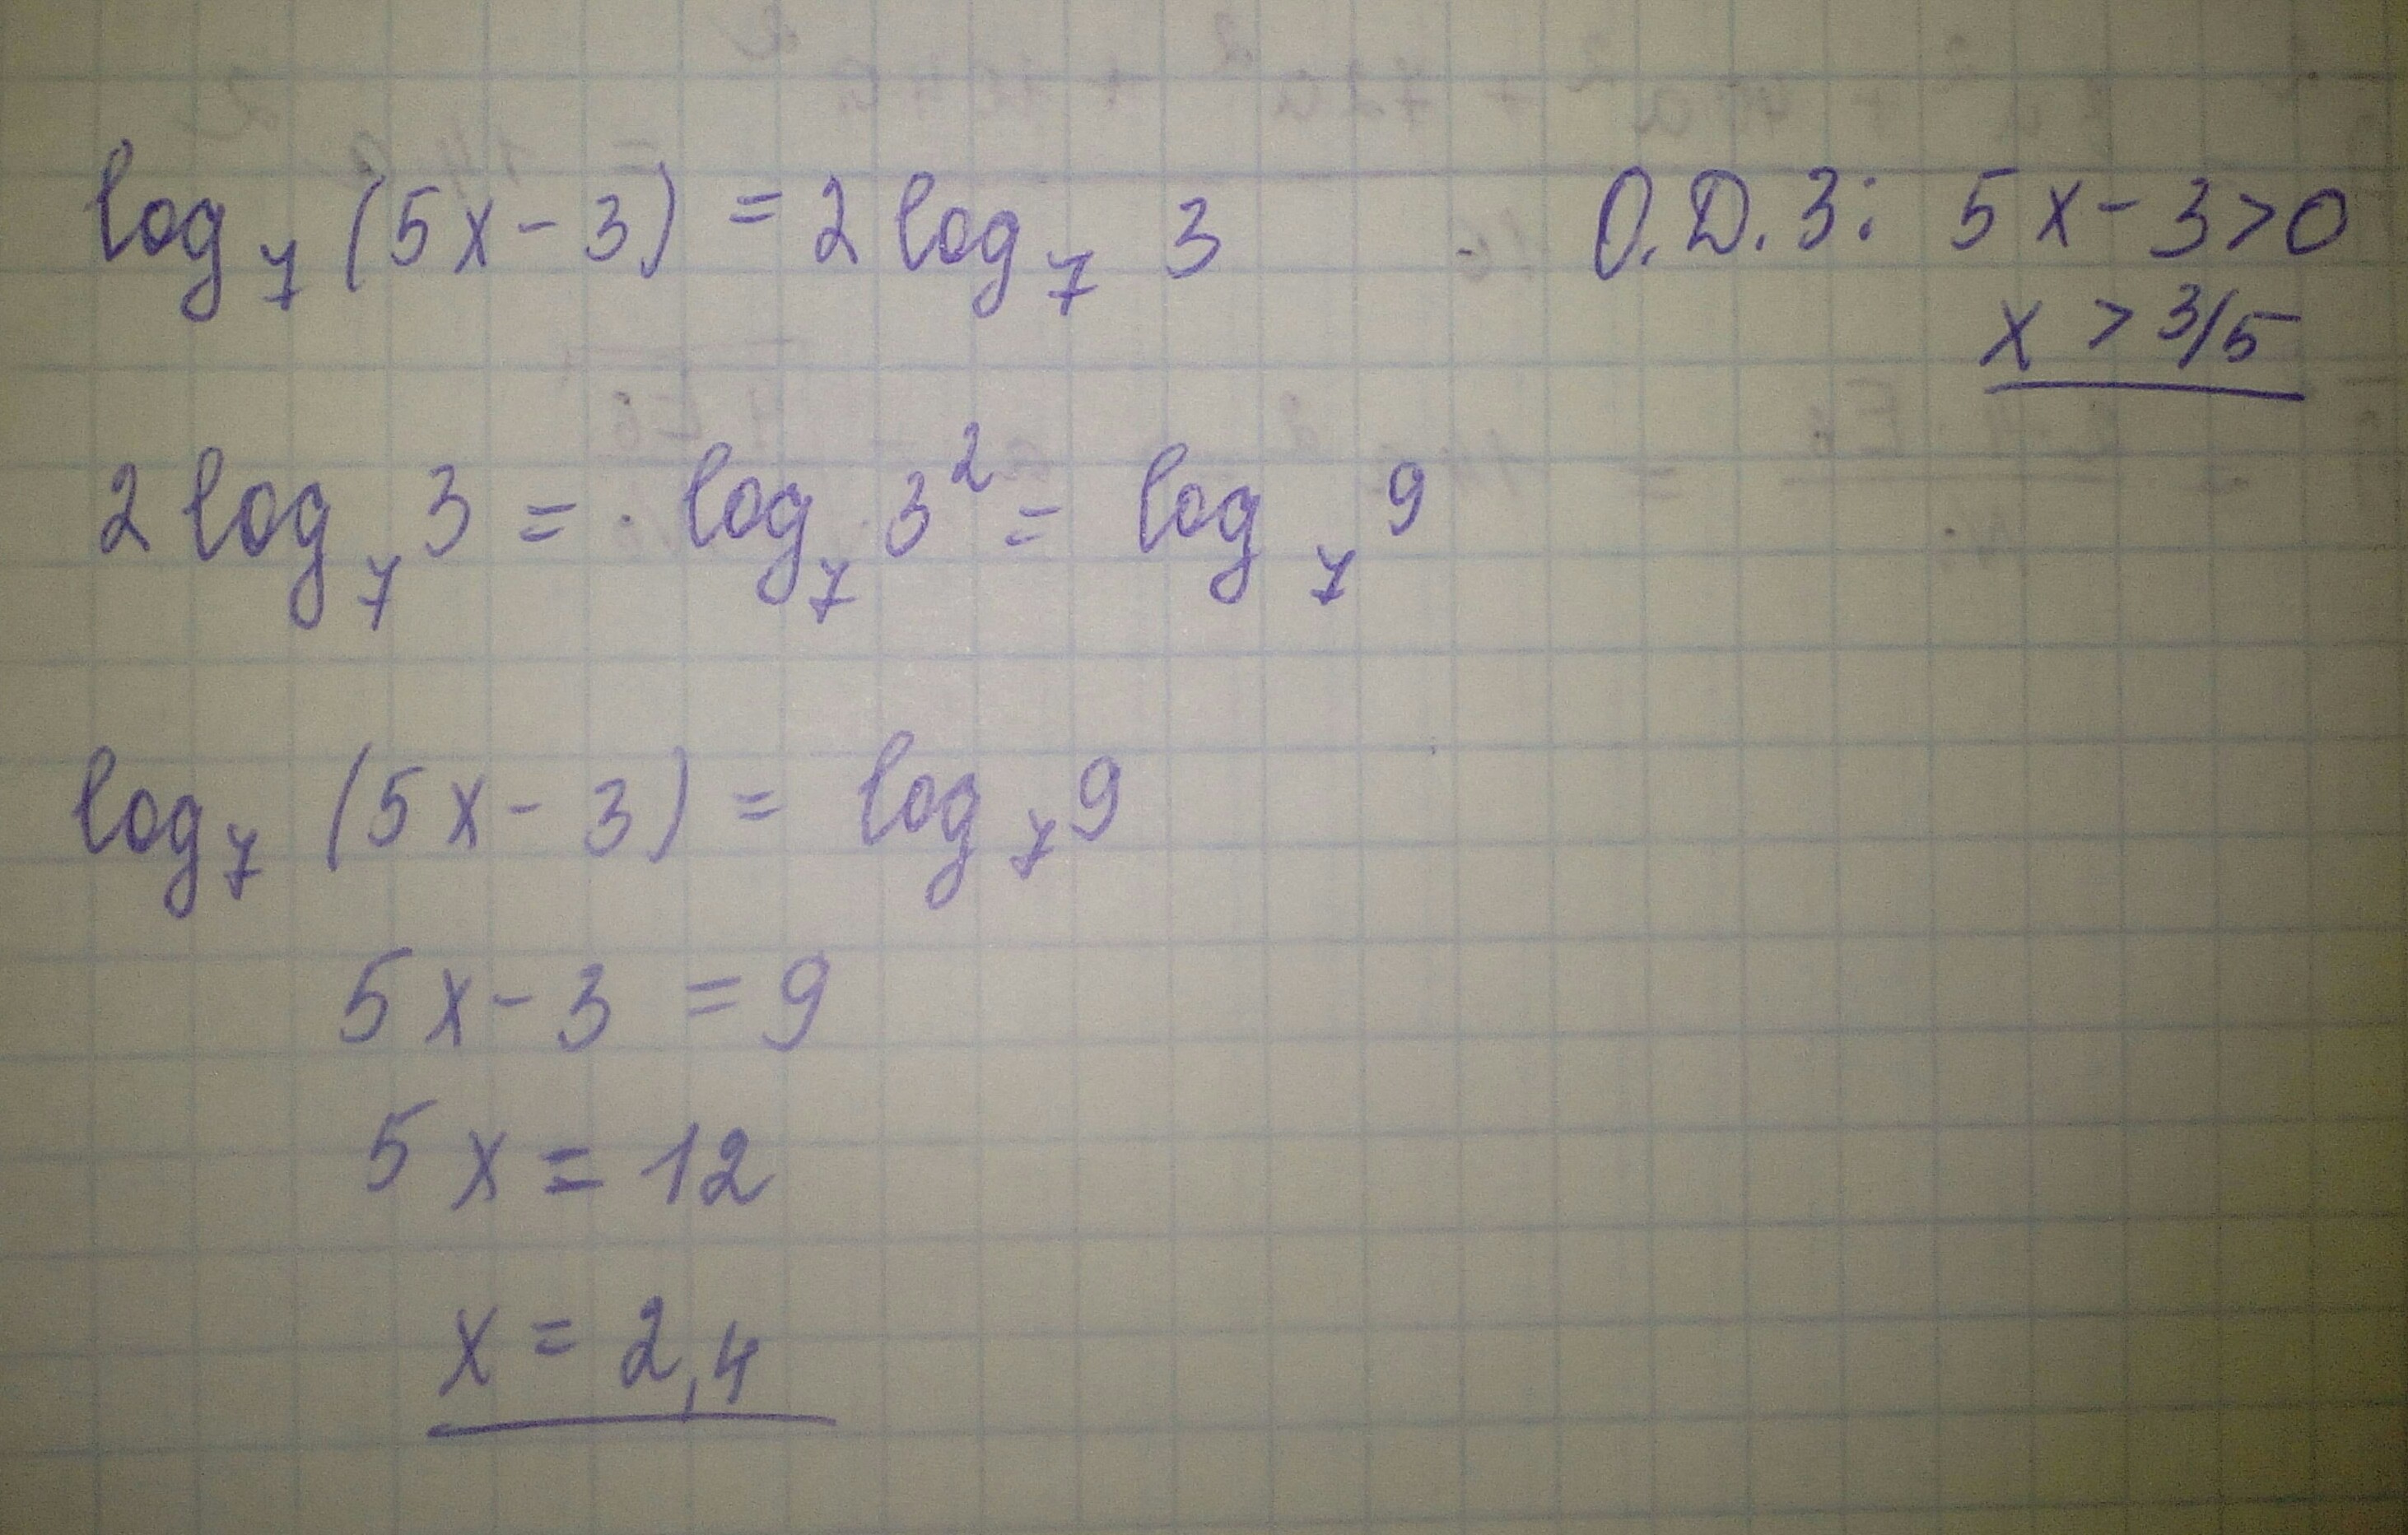 18 5 x 3 1 7x. Найдите корни уравнения log5 (x-1)=2. Найдите корень уравнения Лог. Log(2)(x^2-5)*(log(3)(7-x))^2+3*log(2)(x^2-5)-log(3)(7-x)-6=0. Найдите корень уравнения log4 2 5x+7 3.